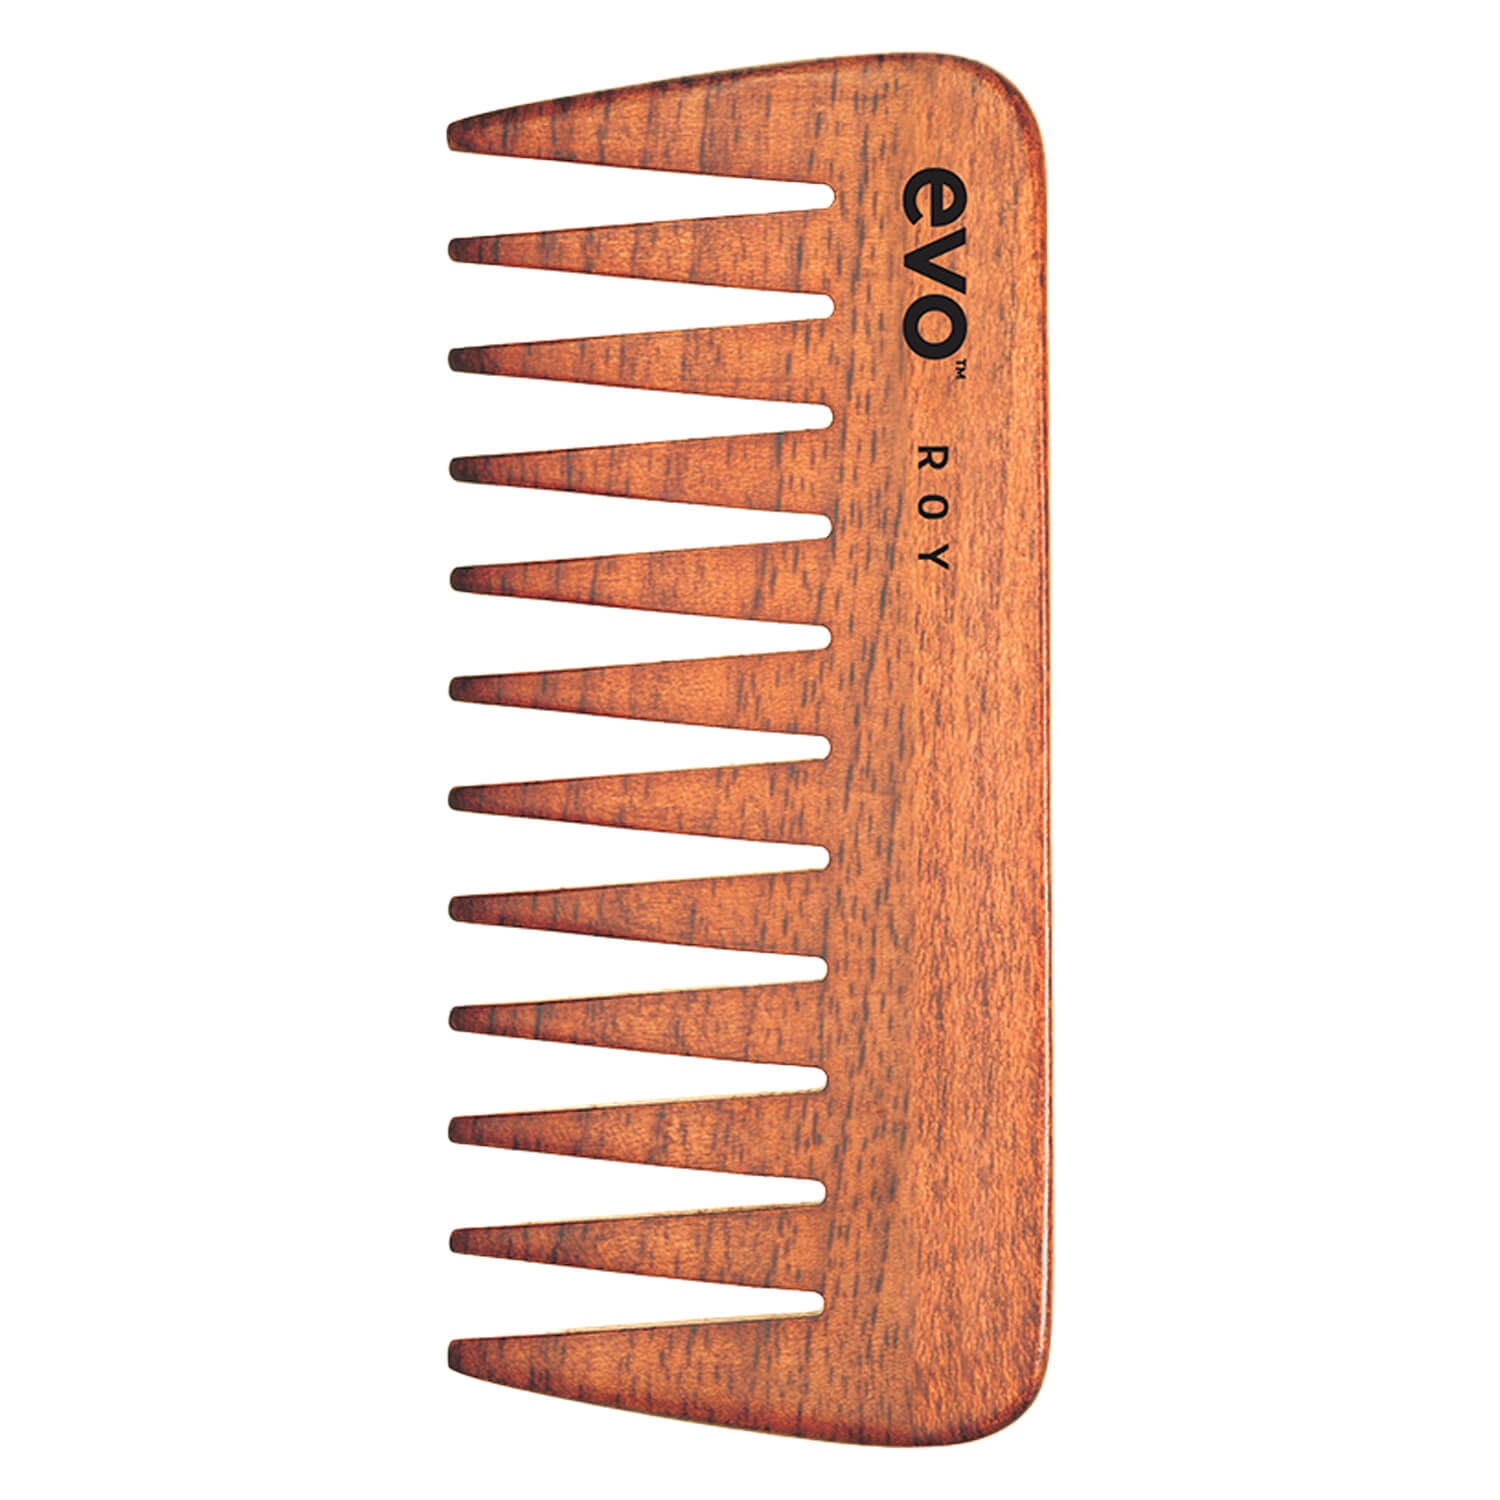 Produktbild von evo brushes - roy wide-tooth comb